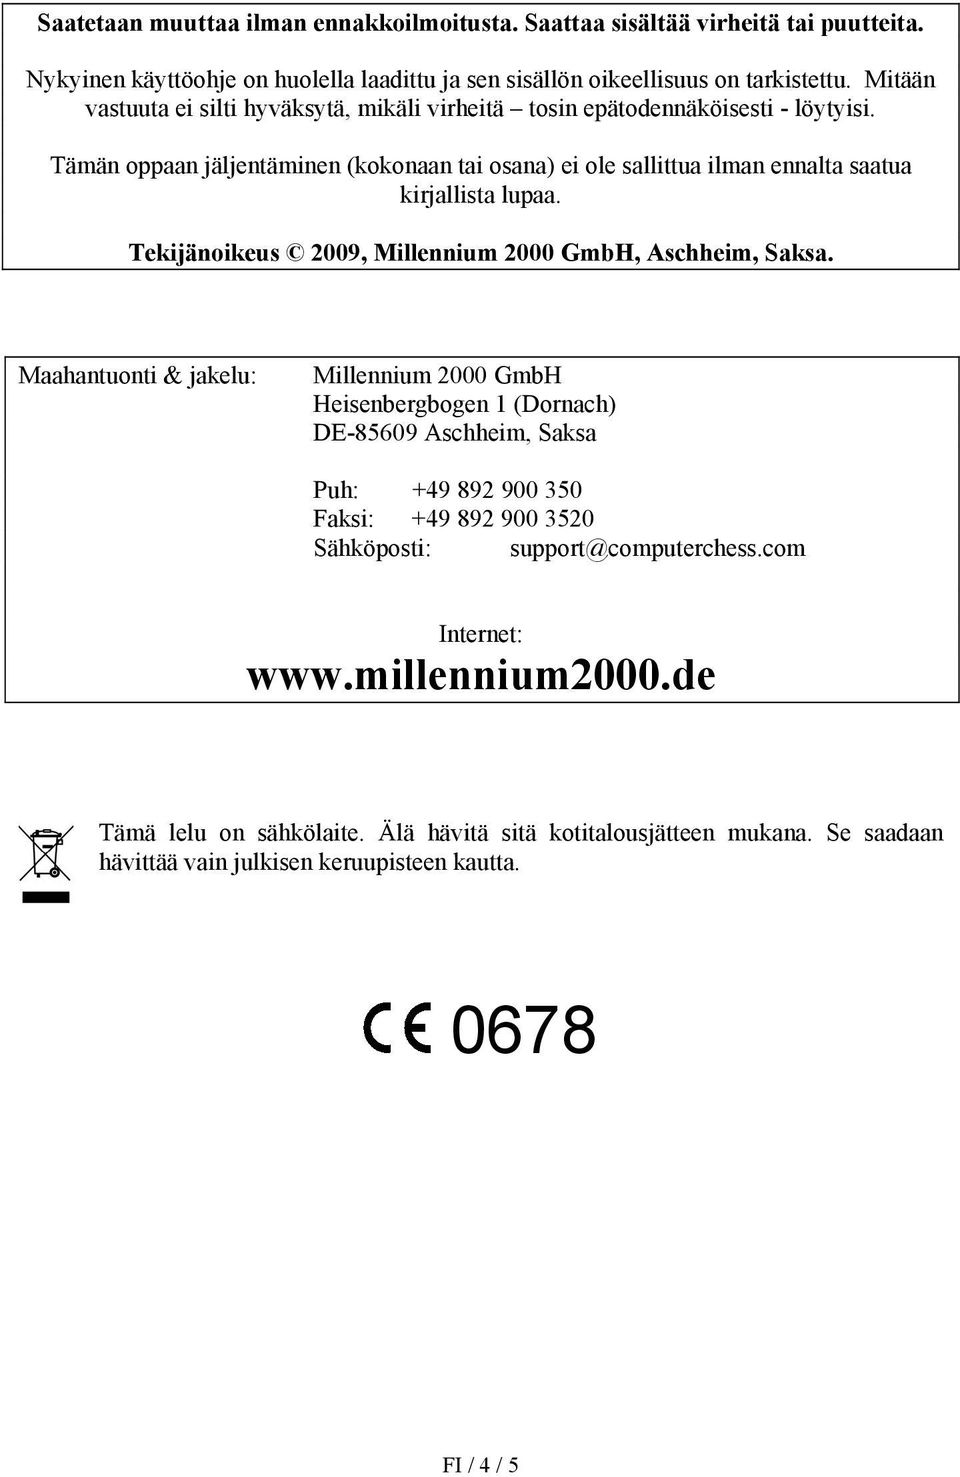 Tekijänoikeus 2009, Millennium 2000 GmbH, Aschheim, Saksa.